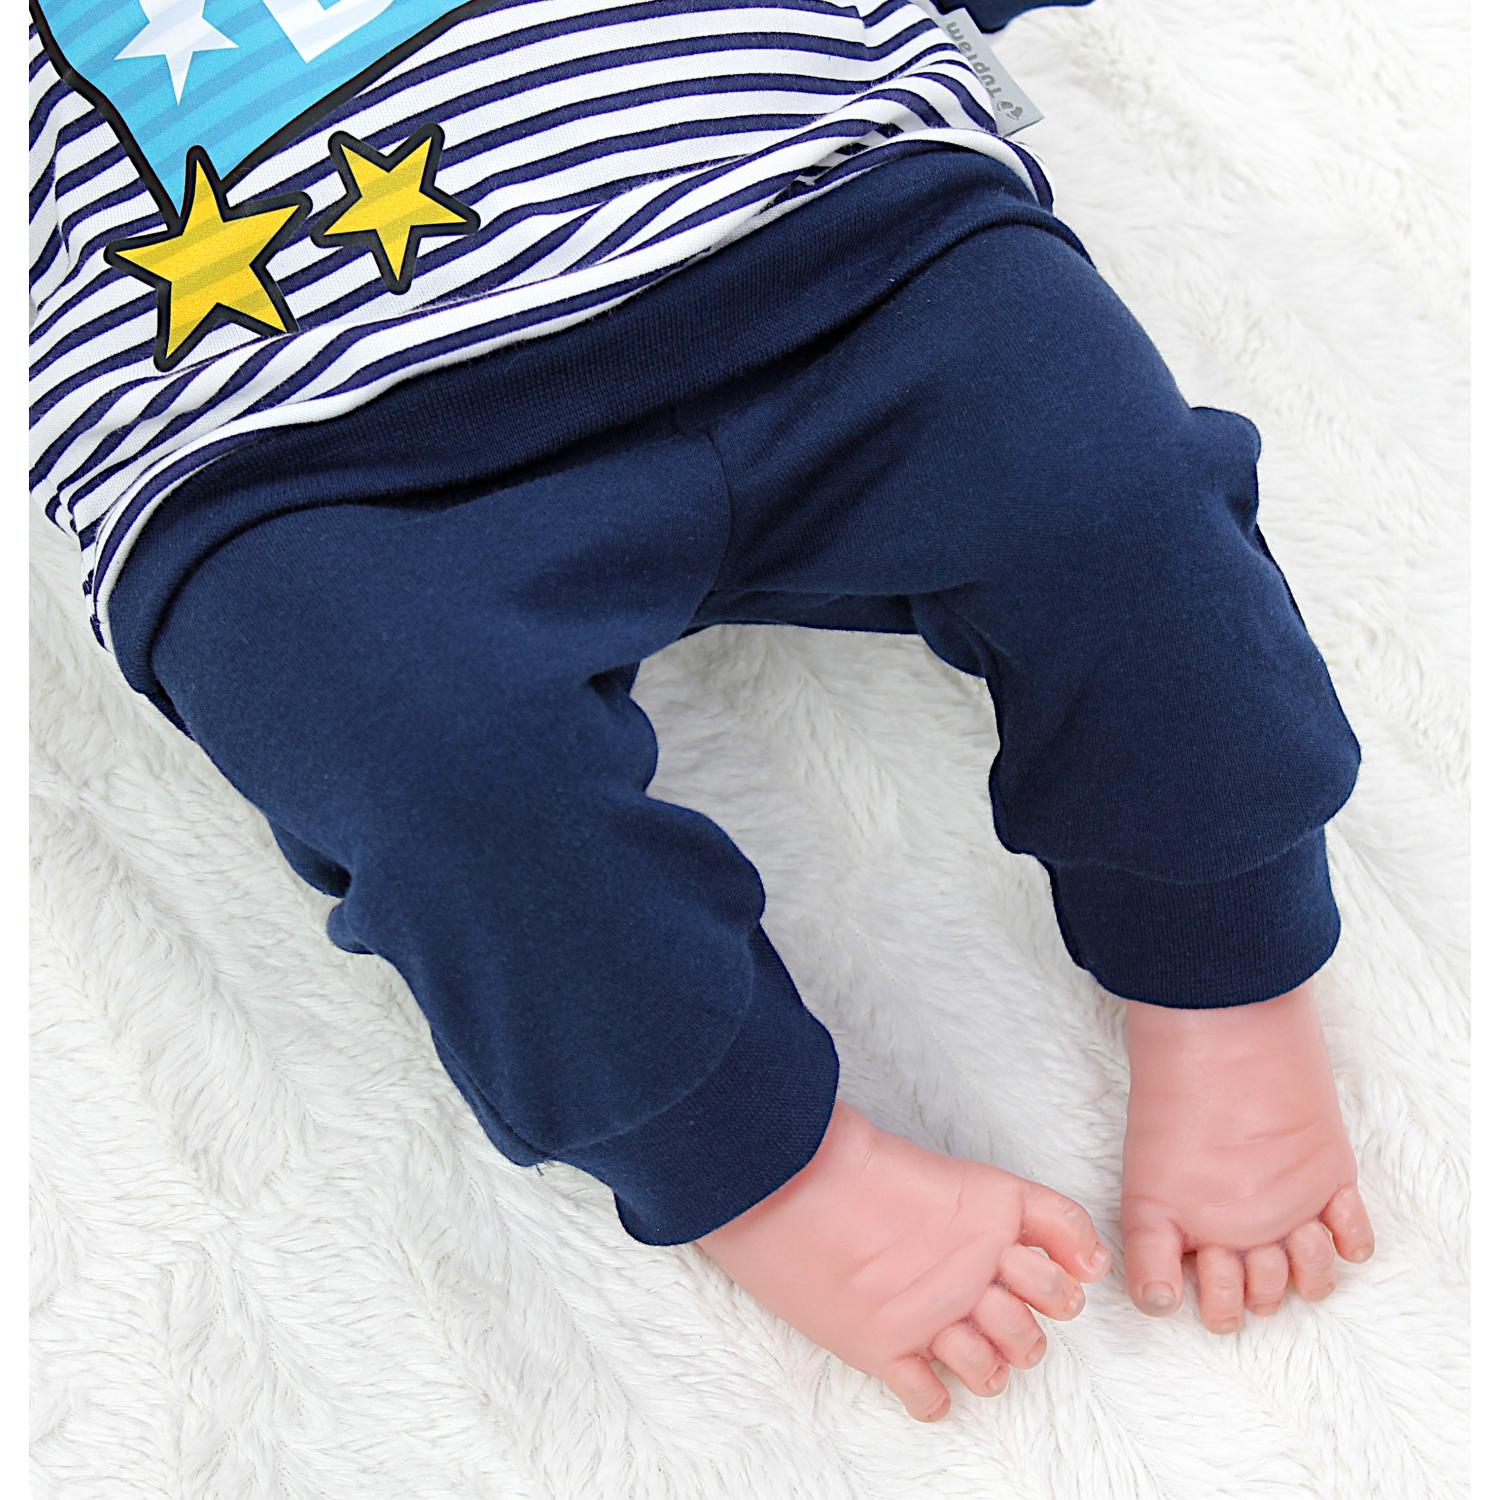 Baby Langarmshirt mit Aufdruck und Hose (2-teilig)